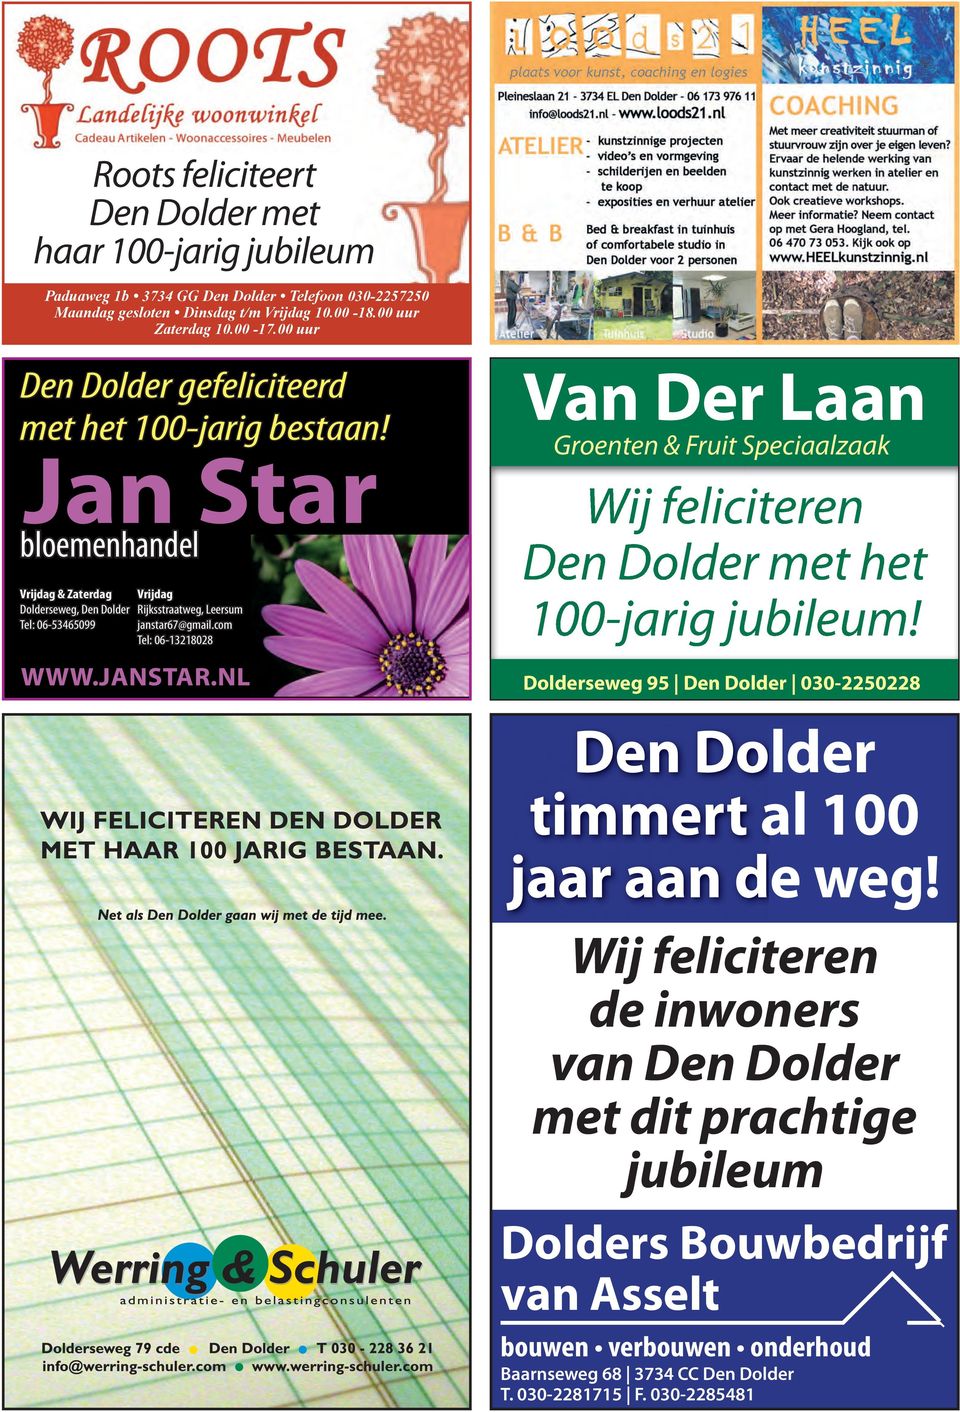 com Tel: 06-13218028 www.janstar.nl Van Der Laan Groenten & Fruit Speciaalzaak Wij feliciteren met het 100-jarig jubileum!